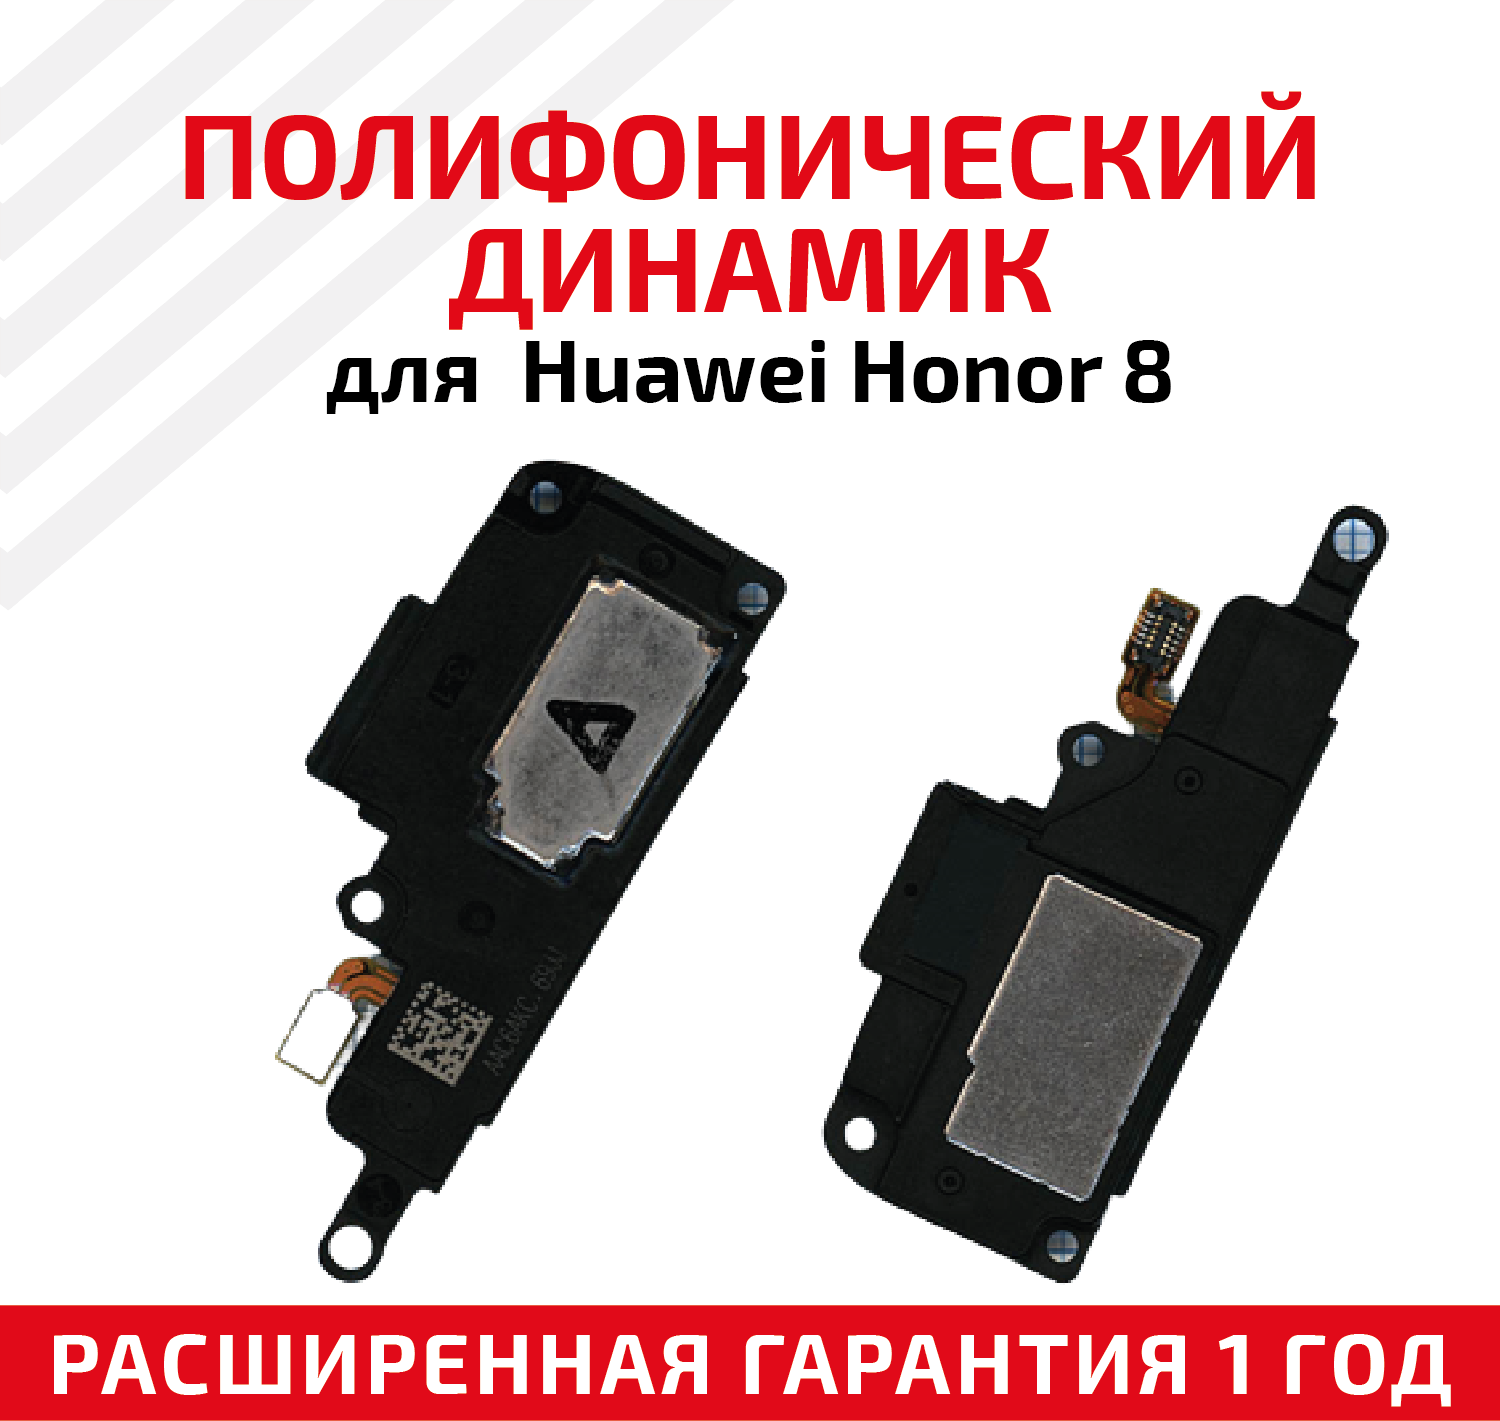 Полифонический динамик (Buzzer бузер звонок) для мобильного телефона (смартфона) Huawei Honor 8